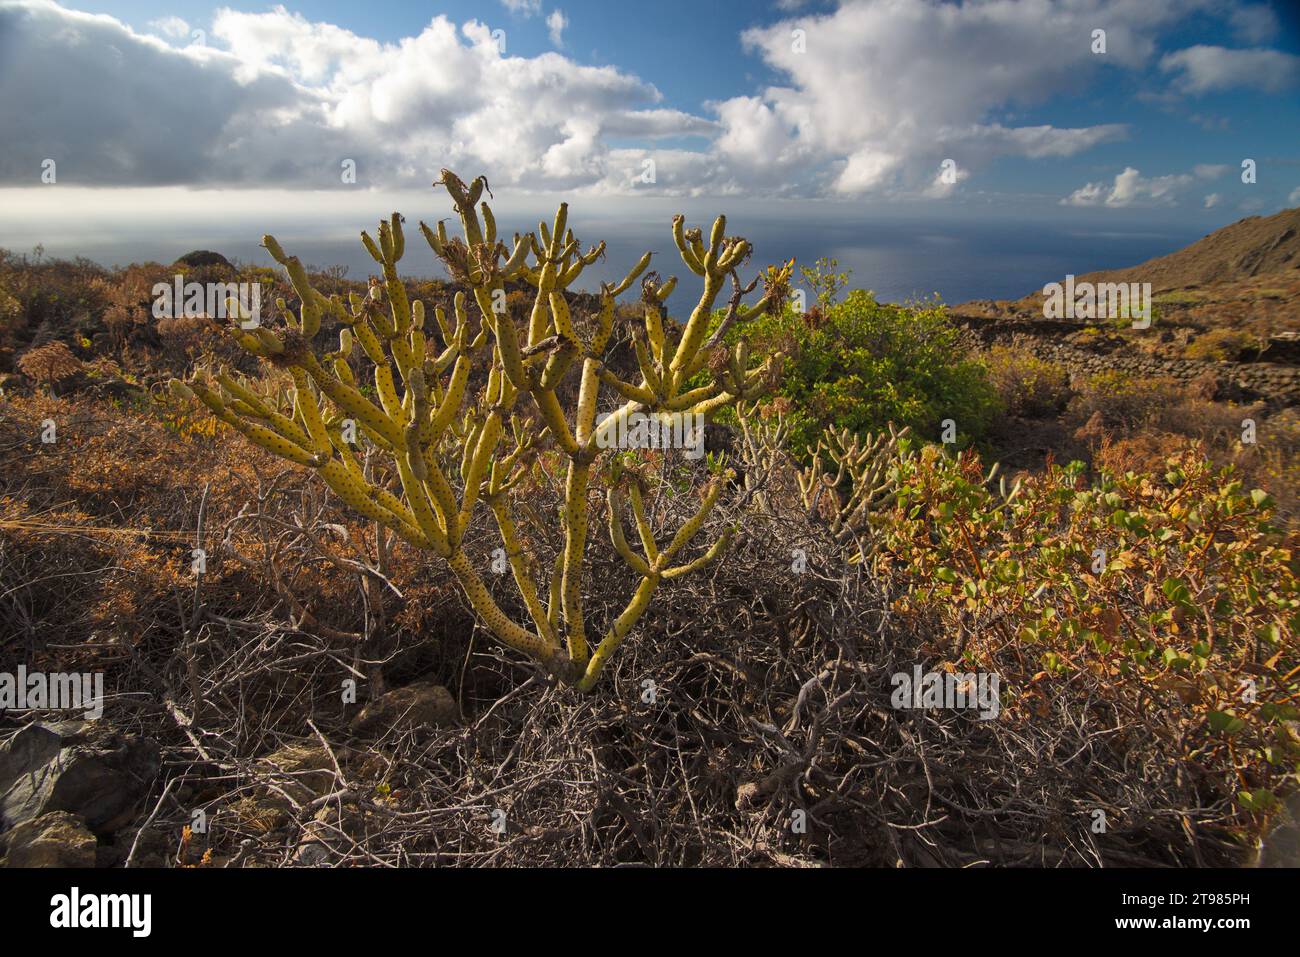 Flora and Landscape of the Island of El Hierro. Flora y paisaje de la Isla de El Hierro Stock Photo